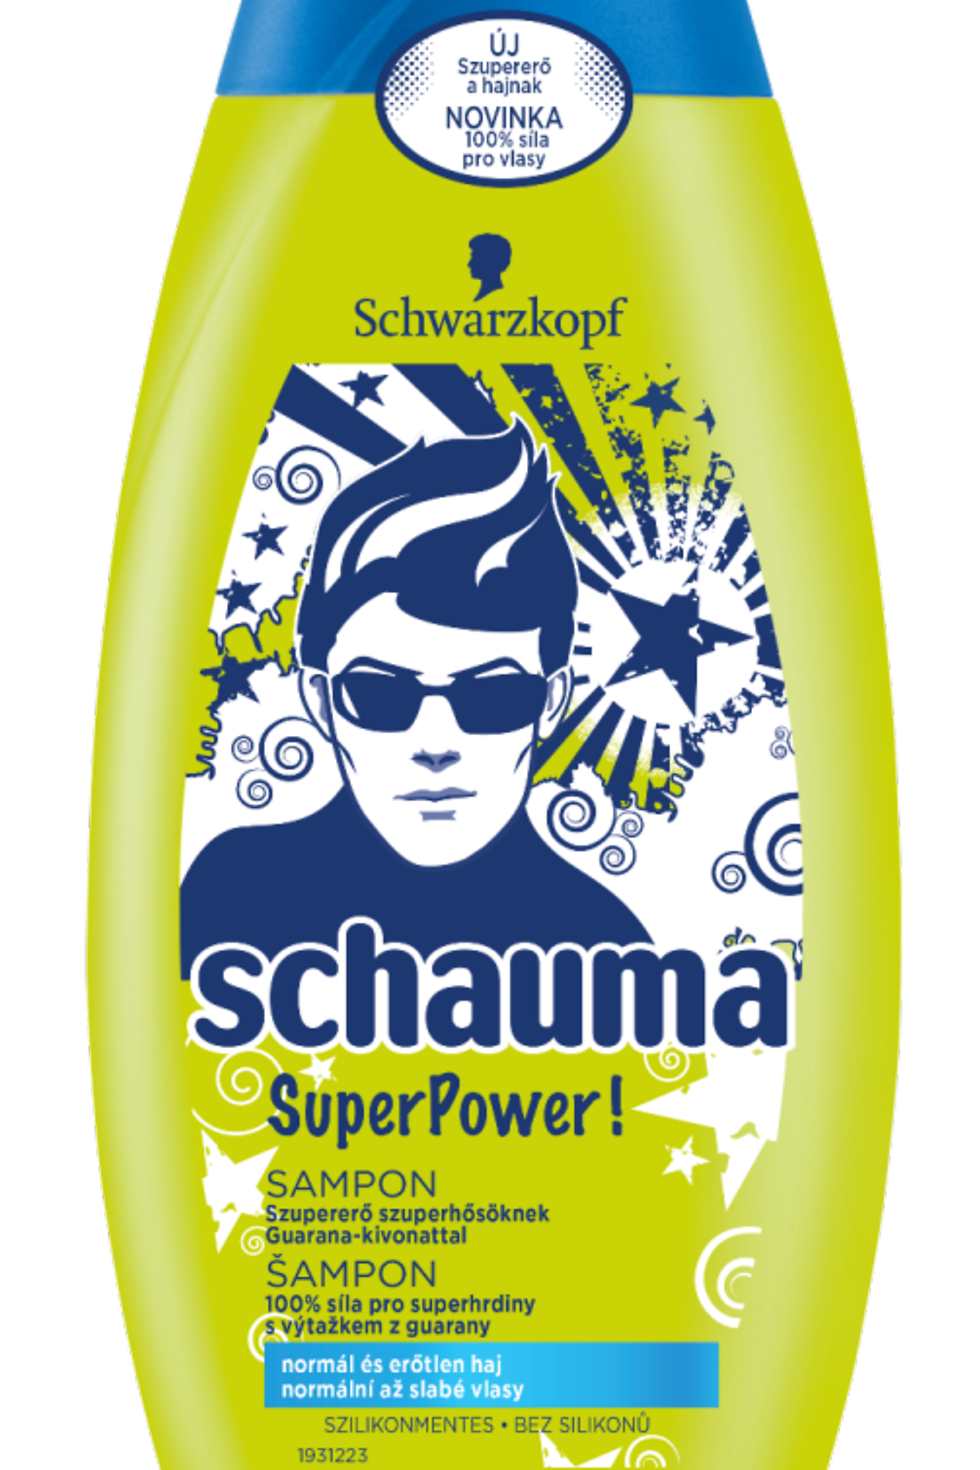 
Šampón Schauma SuperPower!, 250 ml